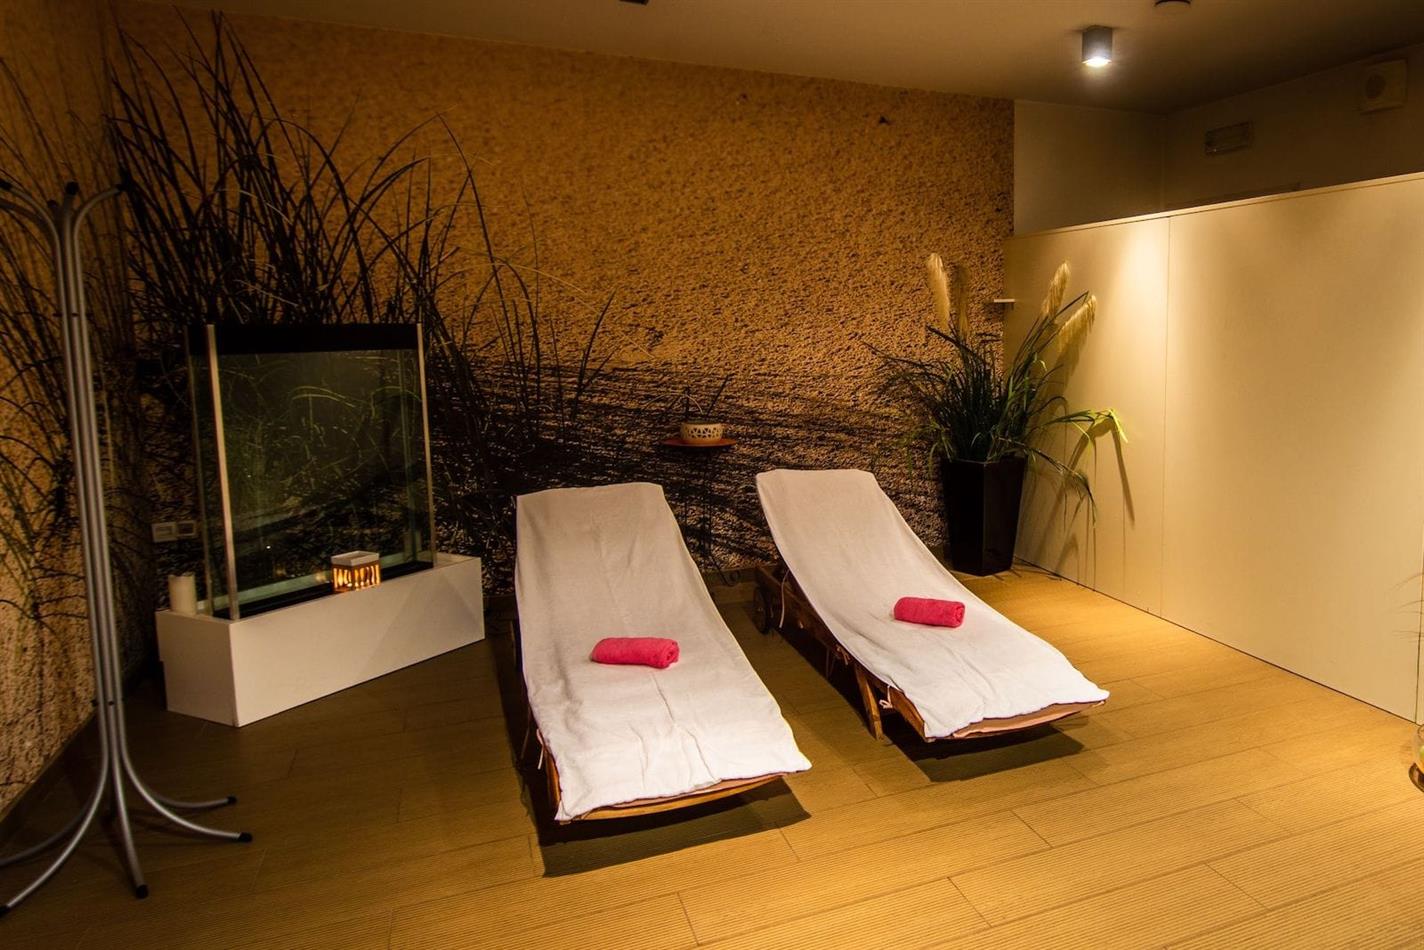 Zwei Saunas mit Chromotherapie und Massagebad bei Kerzenlicht und mit Sekt